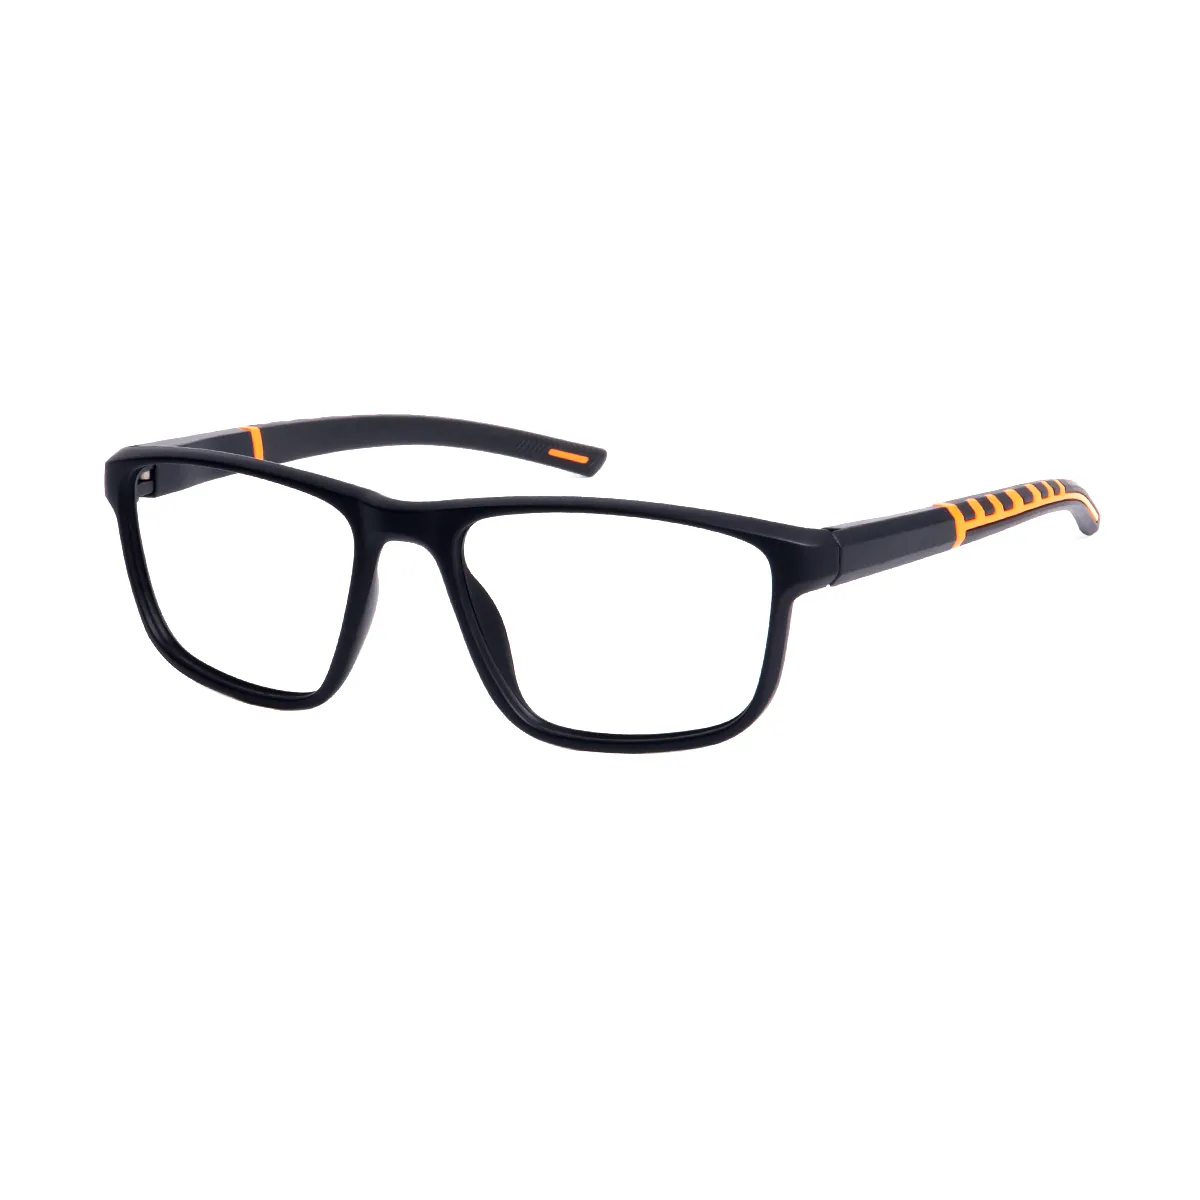 Kendall - Square Black/Orange Glasses for Men